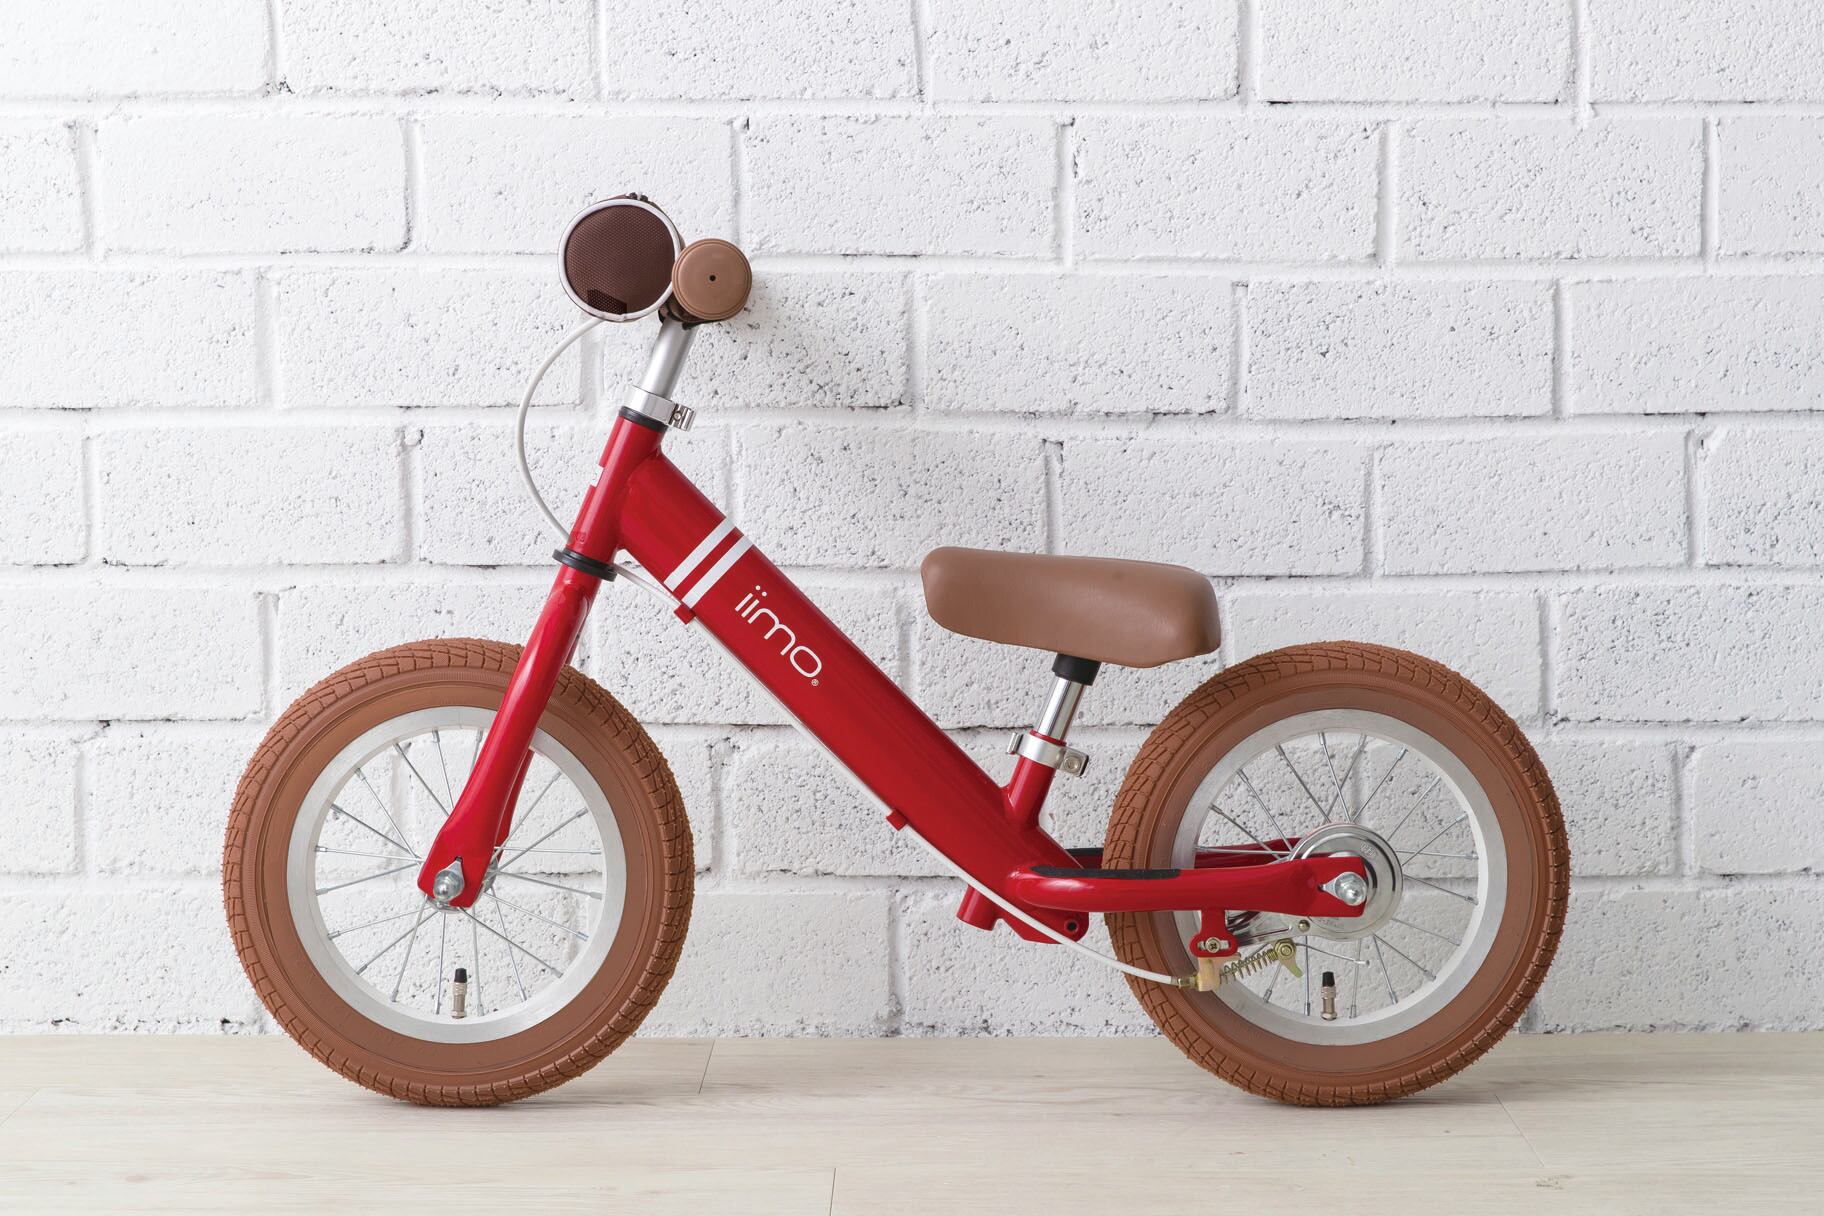 iimo (イイモ) キックバイク ペダルなし自転車 リアブレーキ標準装備 